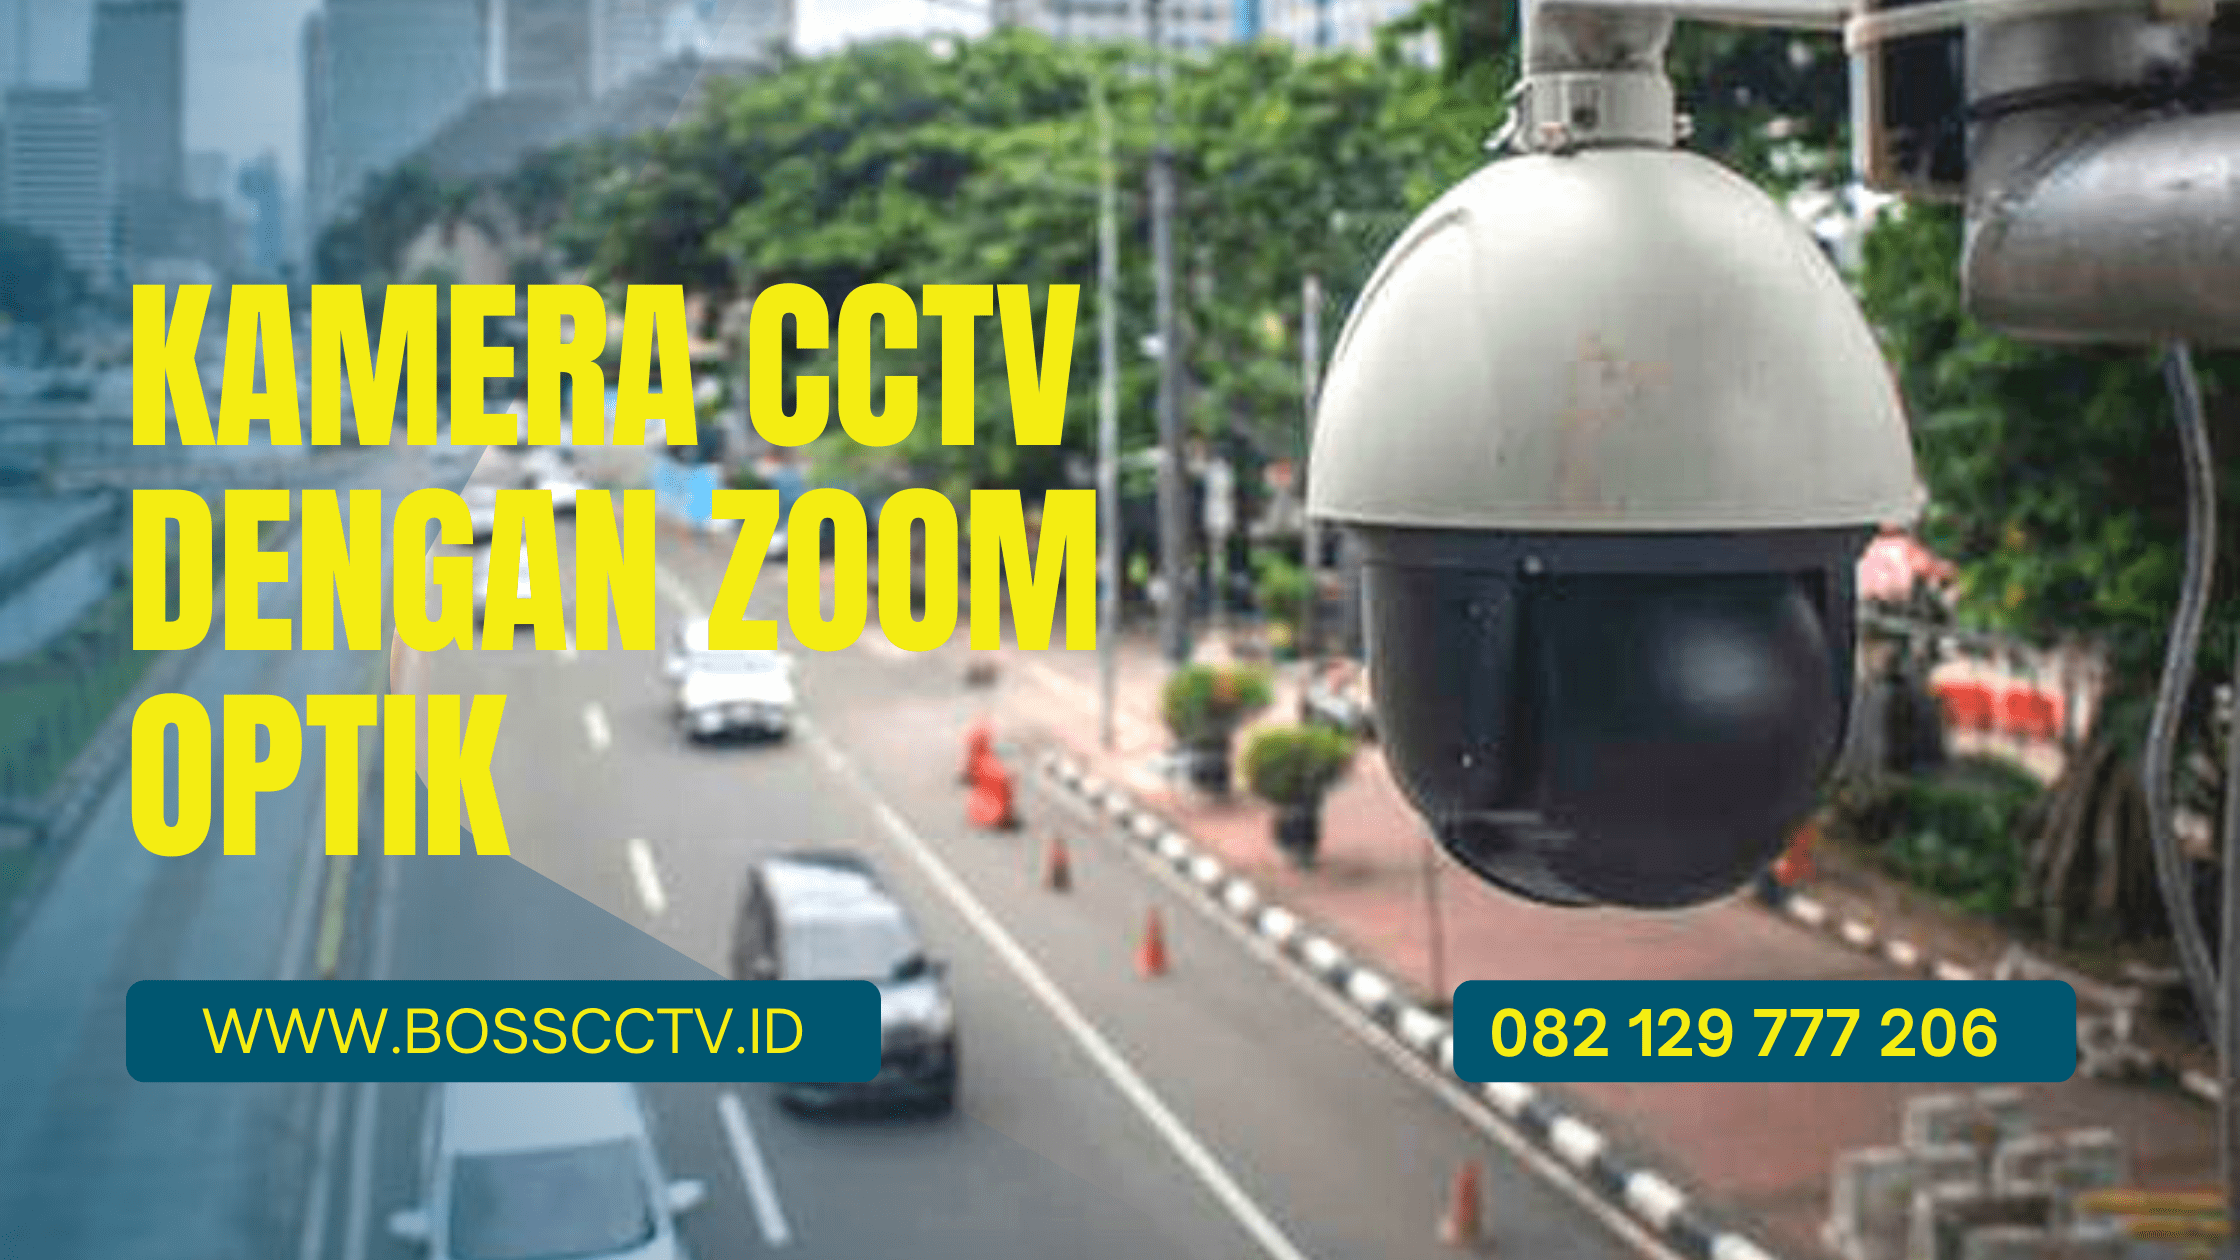 Kamera CCTV Zoom Optik